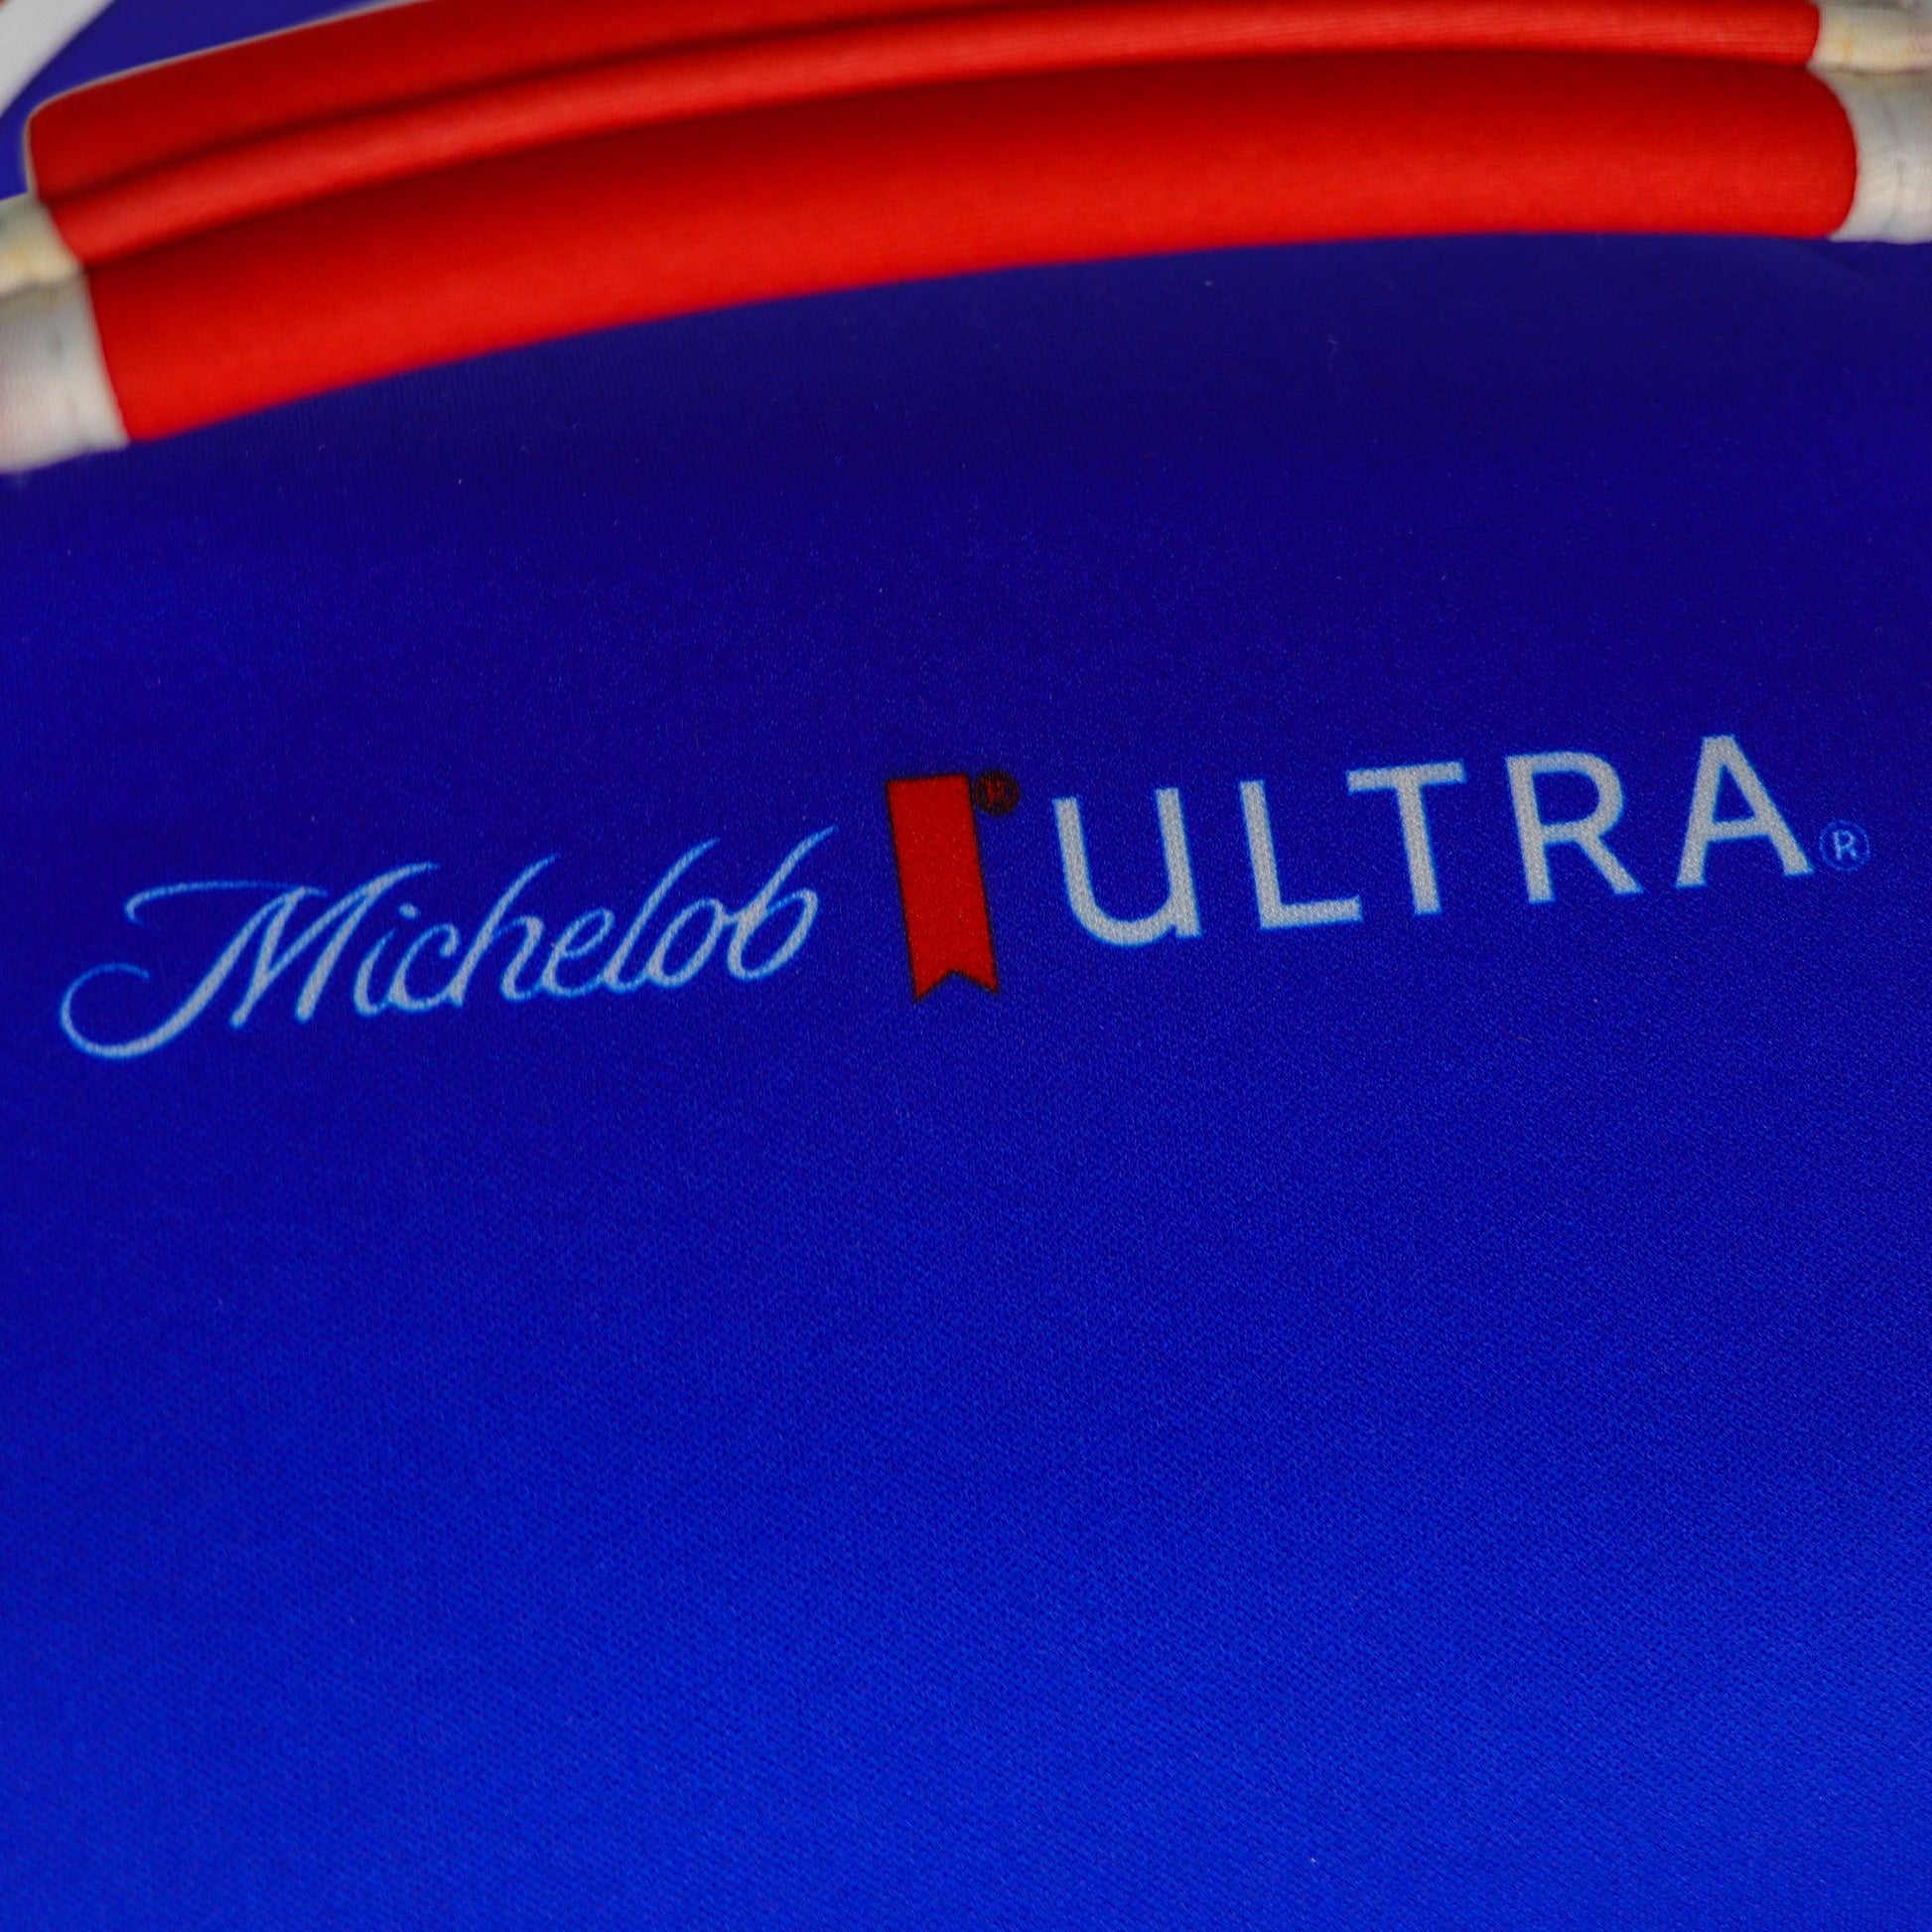 Michelob ULTRA logo on top of Kanga